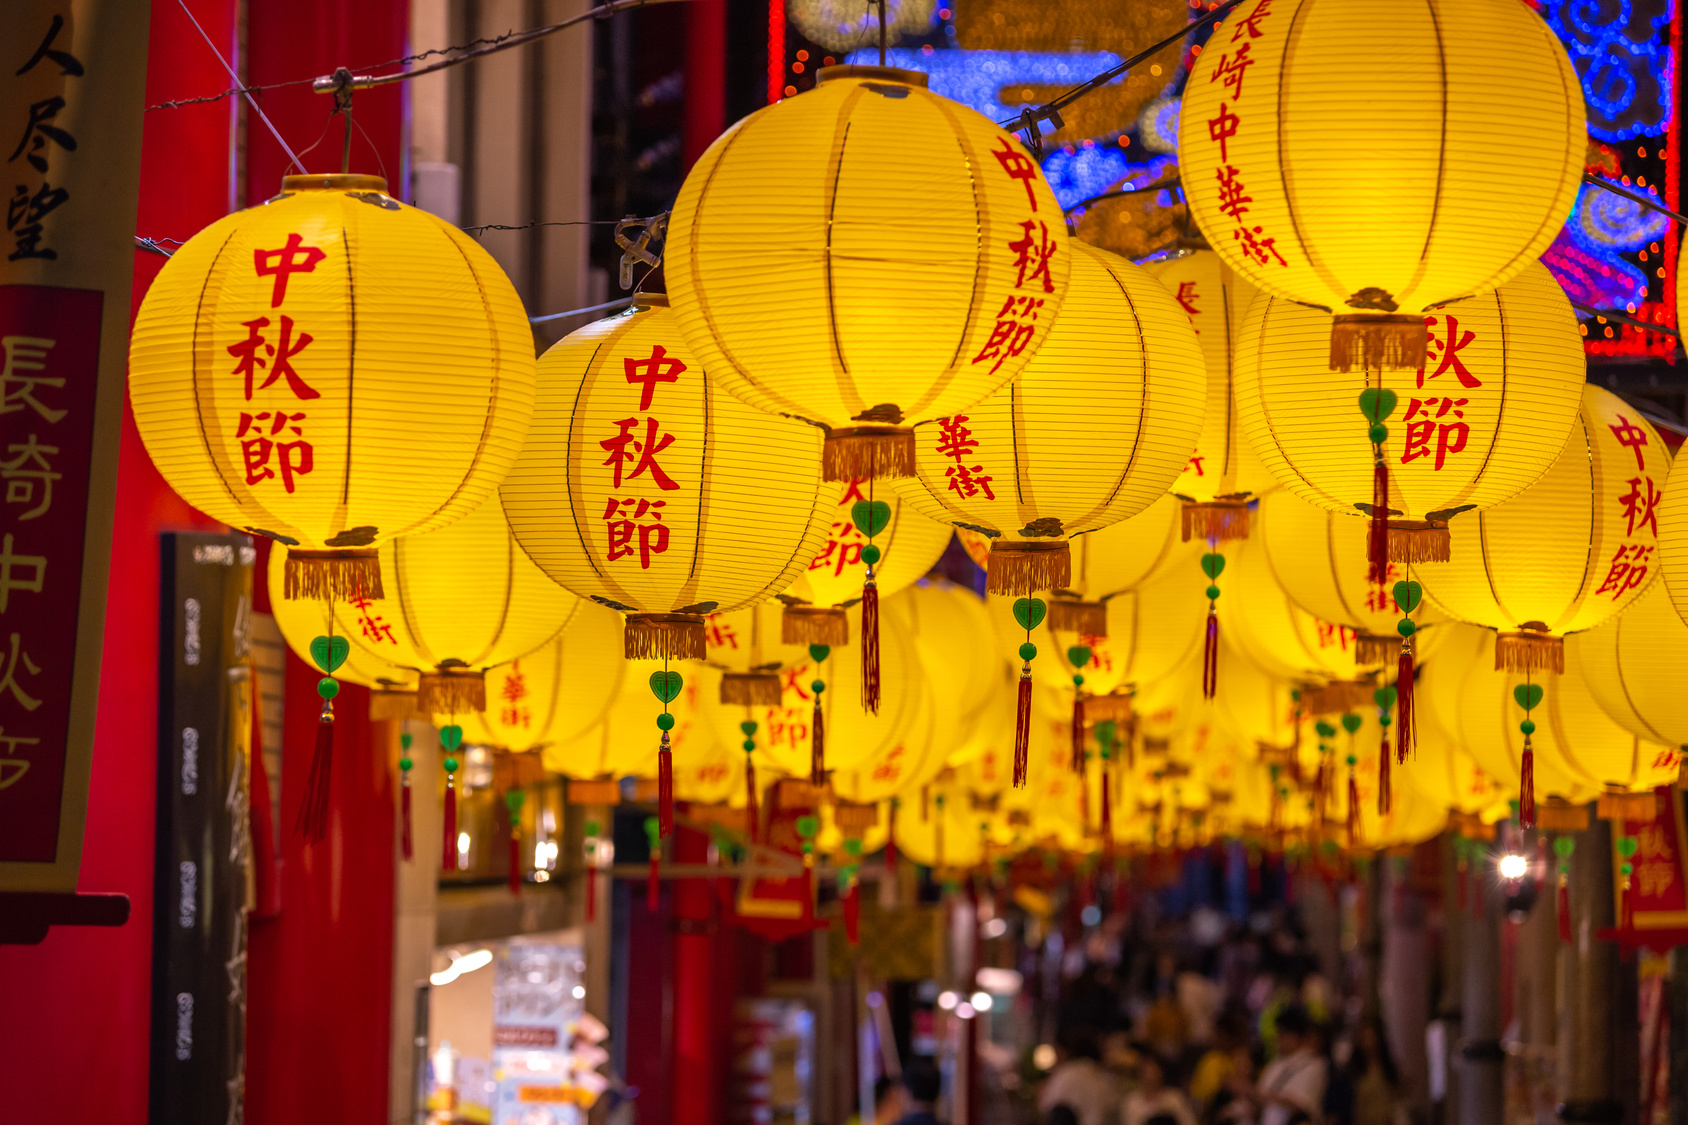 Capodanno Cinese 2019: 6 città del mondo per festeggiarlo!